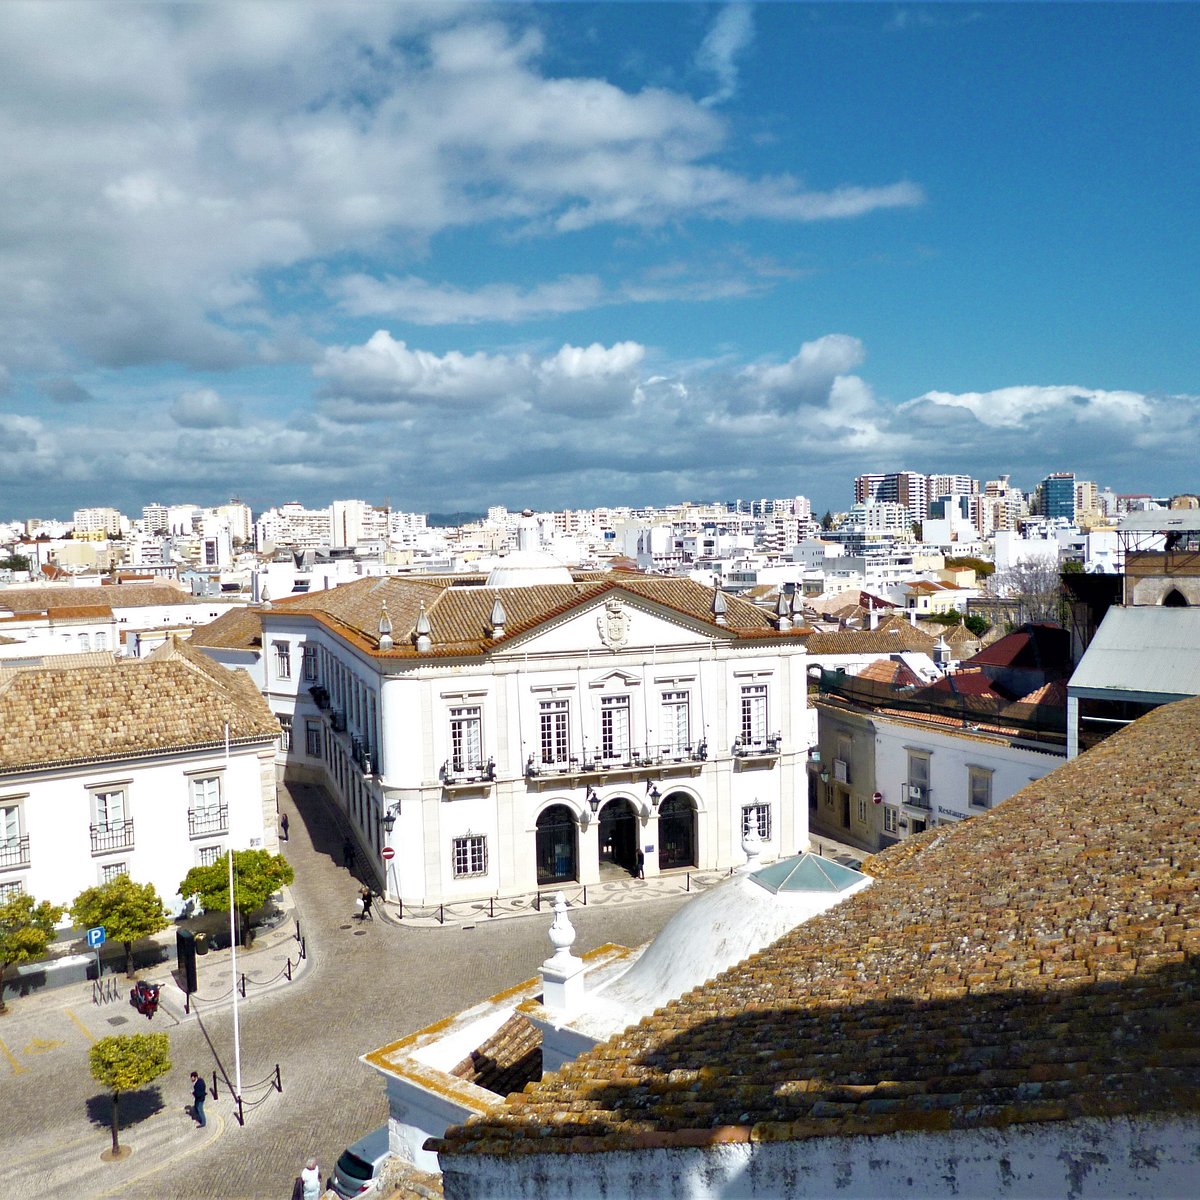 Câmara Municipal - Informações sobre as cidades e vilas de Portugal